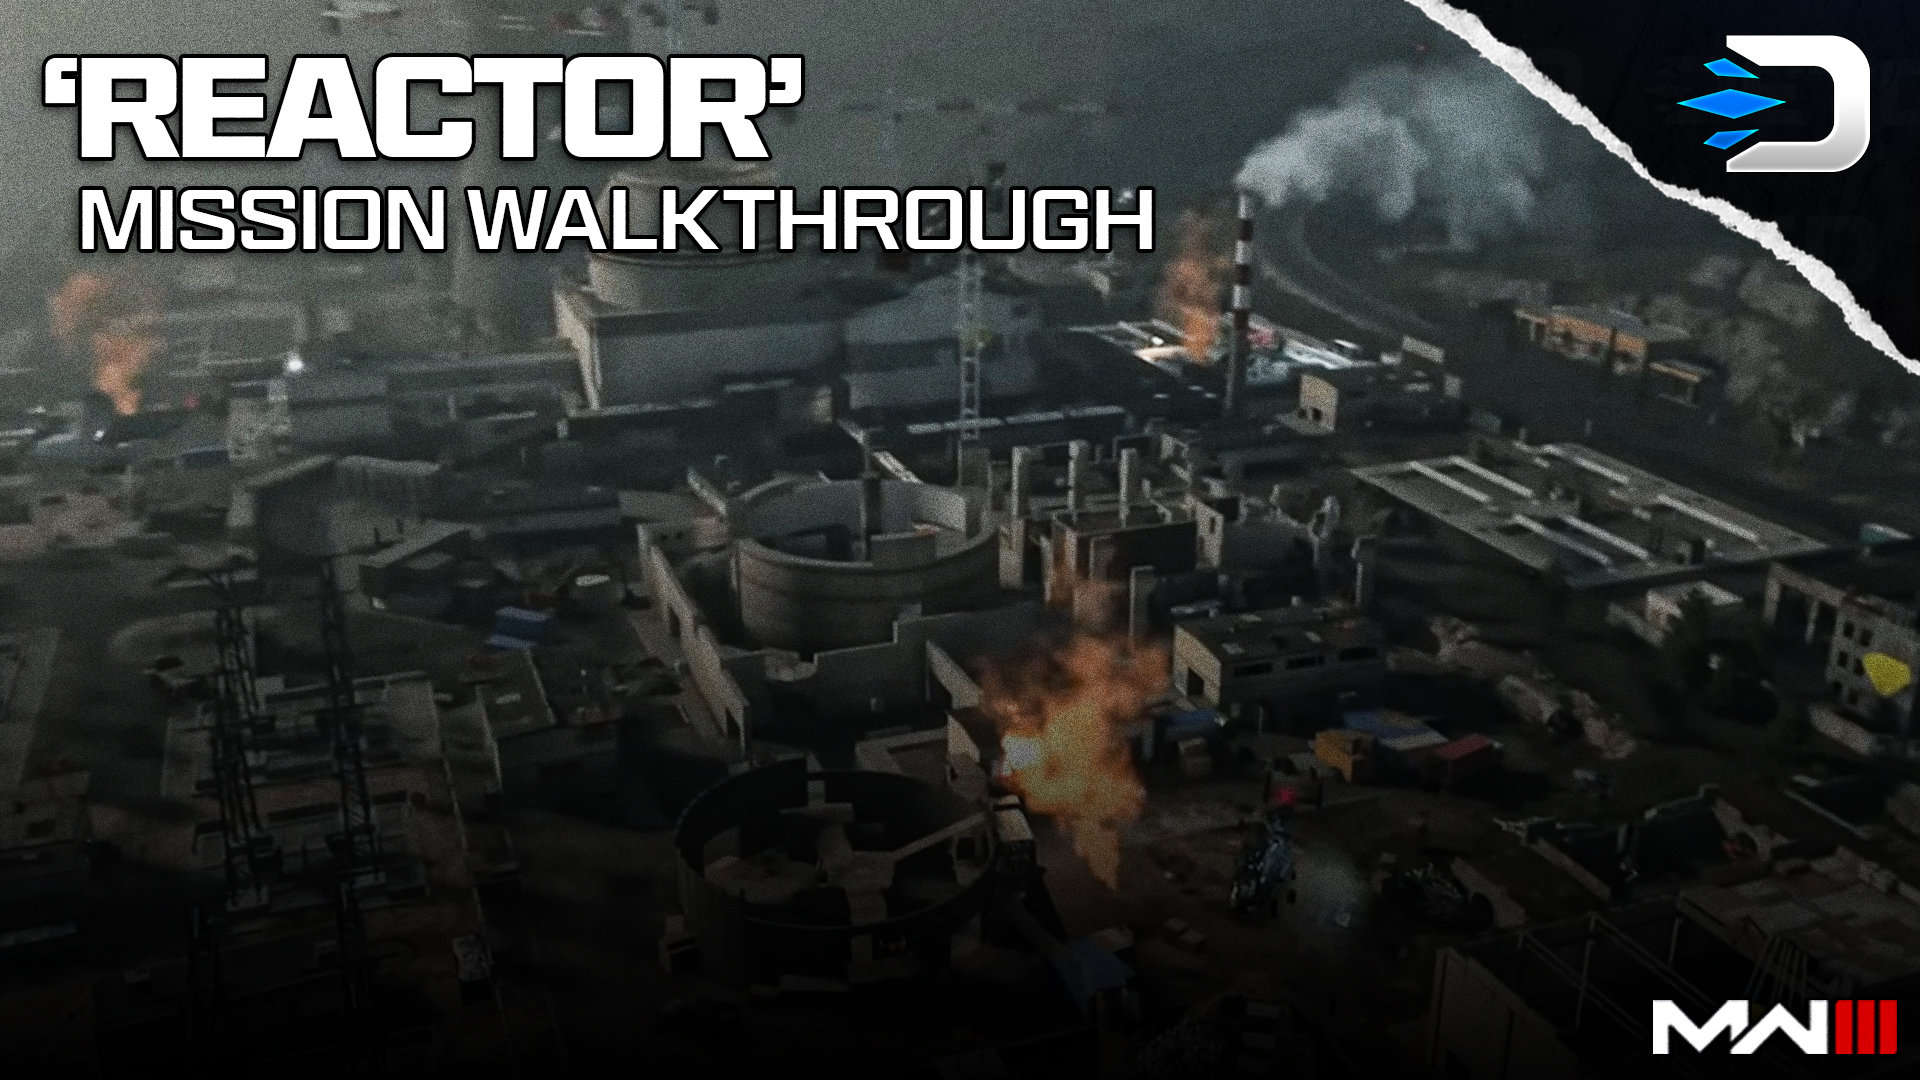 Call of Duty: Modern Warfare - Full Game Walkthrough 